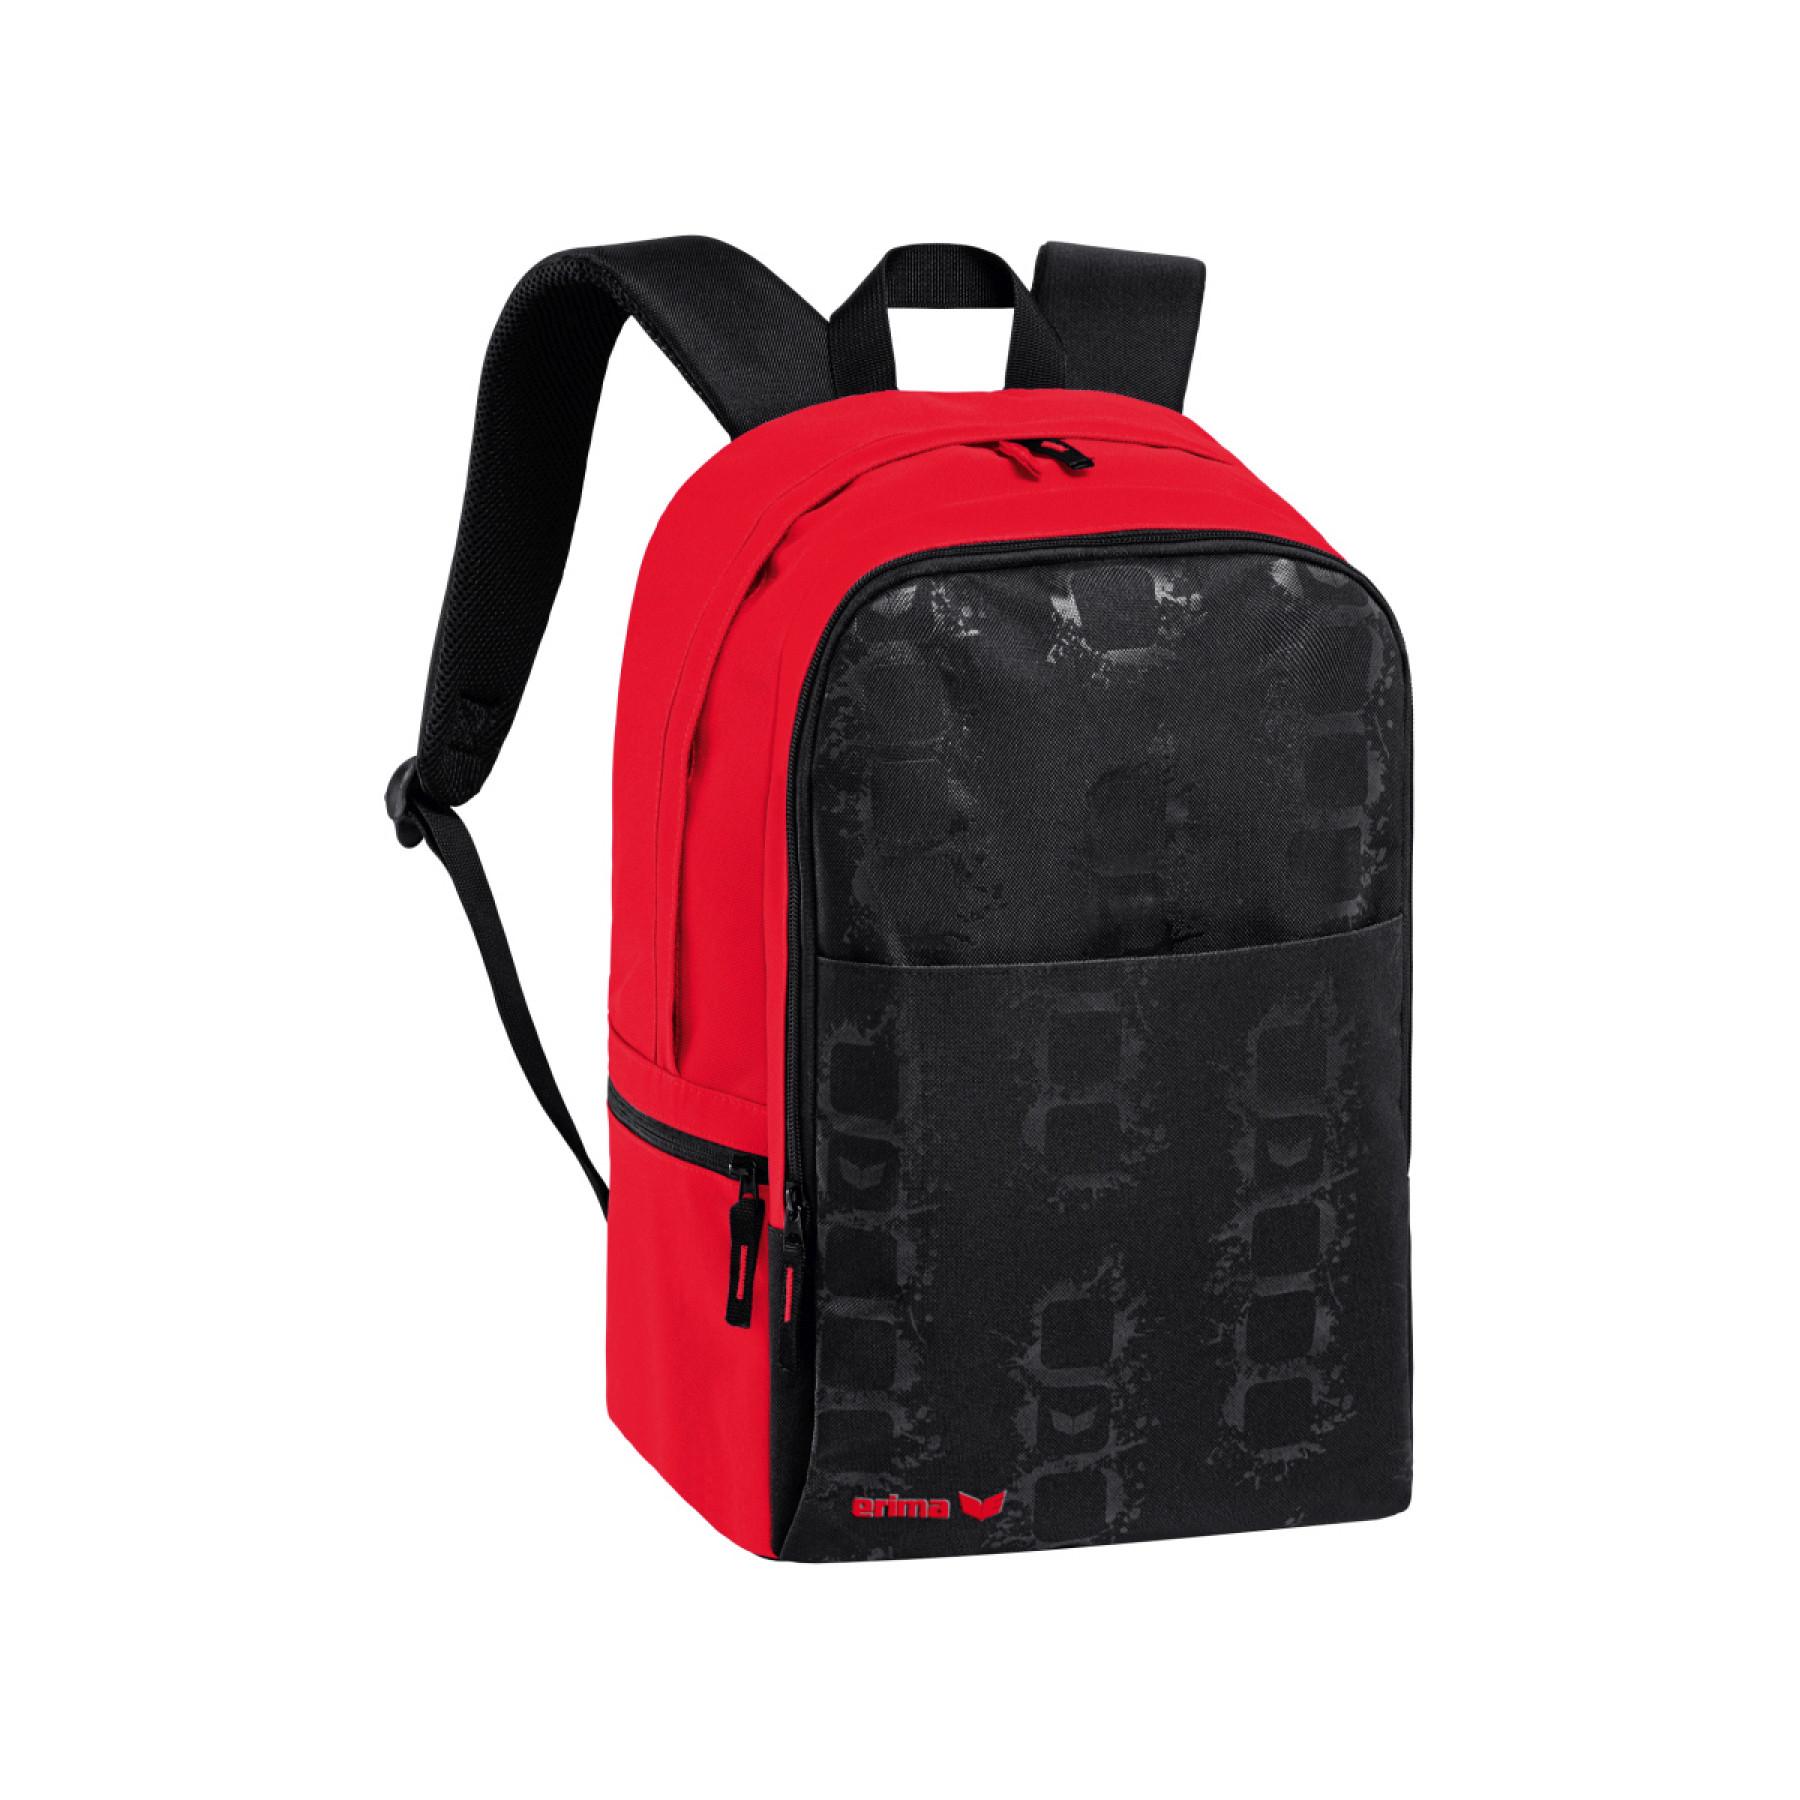 Multifunctional backpack Erima